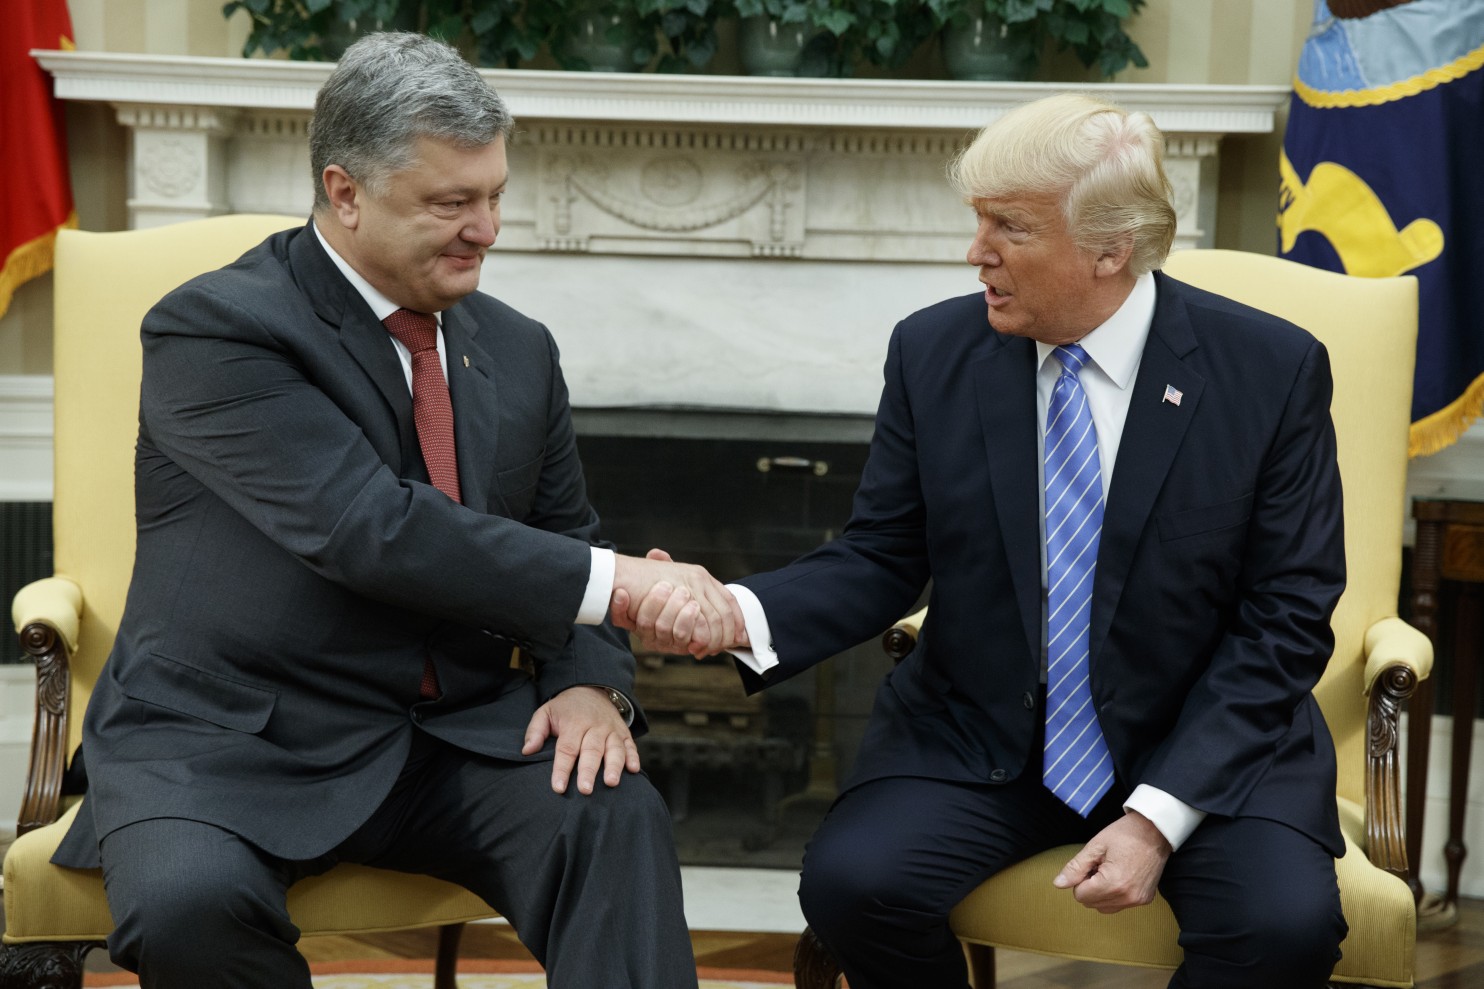 Торжество или злорадство: как пишут украинские СМИ о встрече Порошенко и Трампа